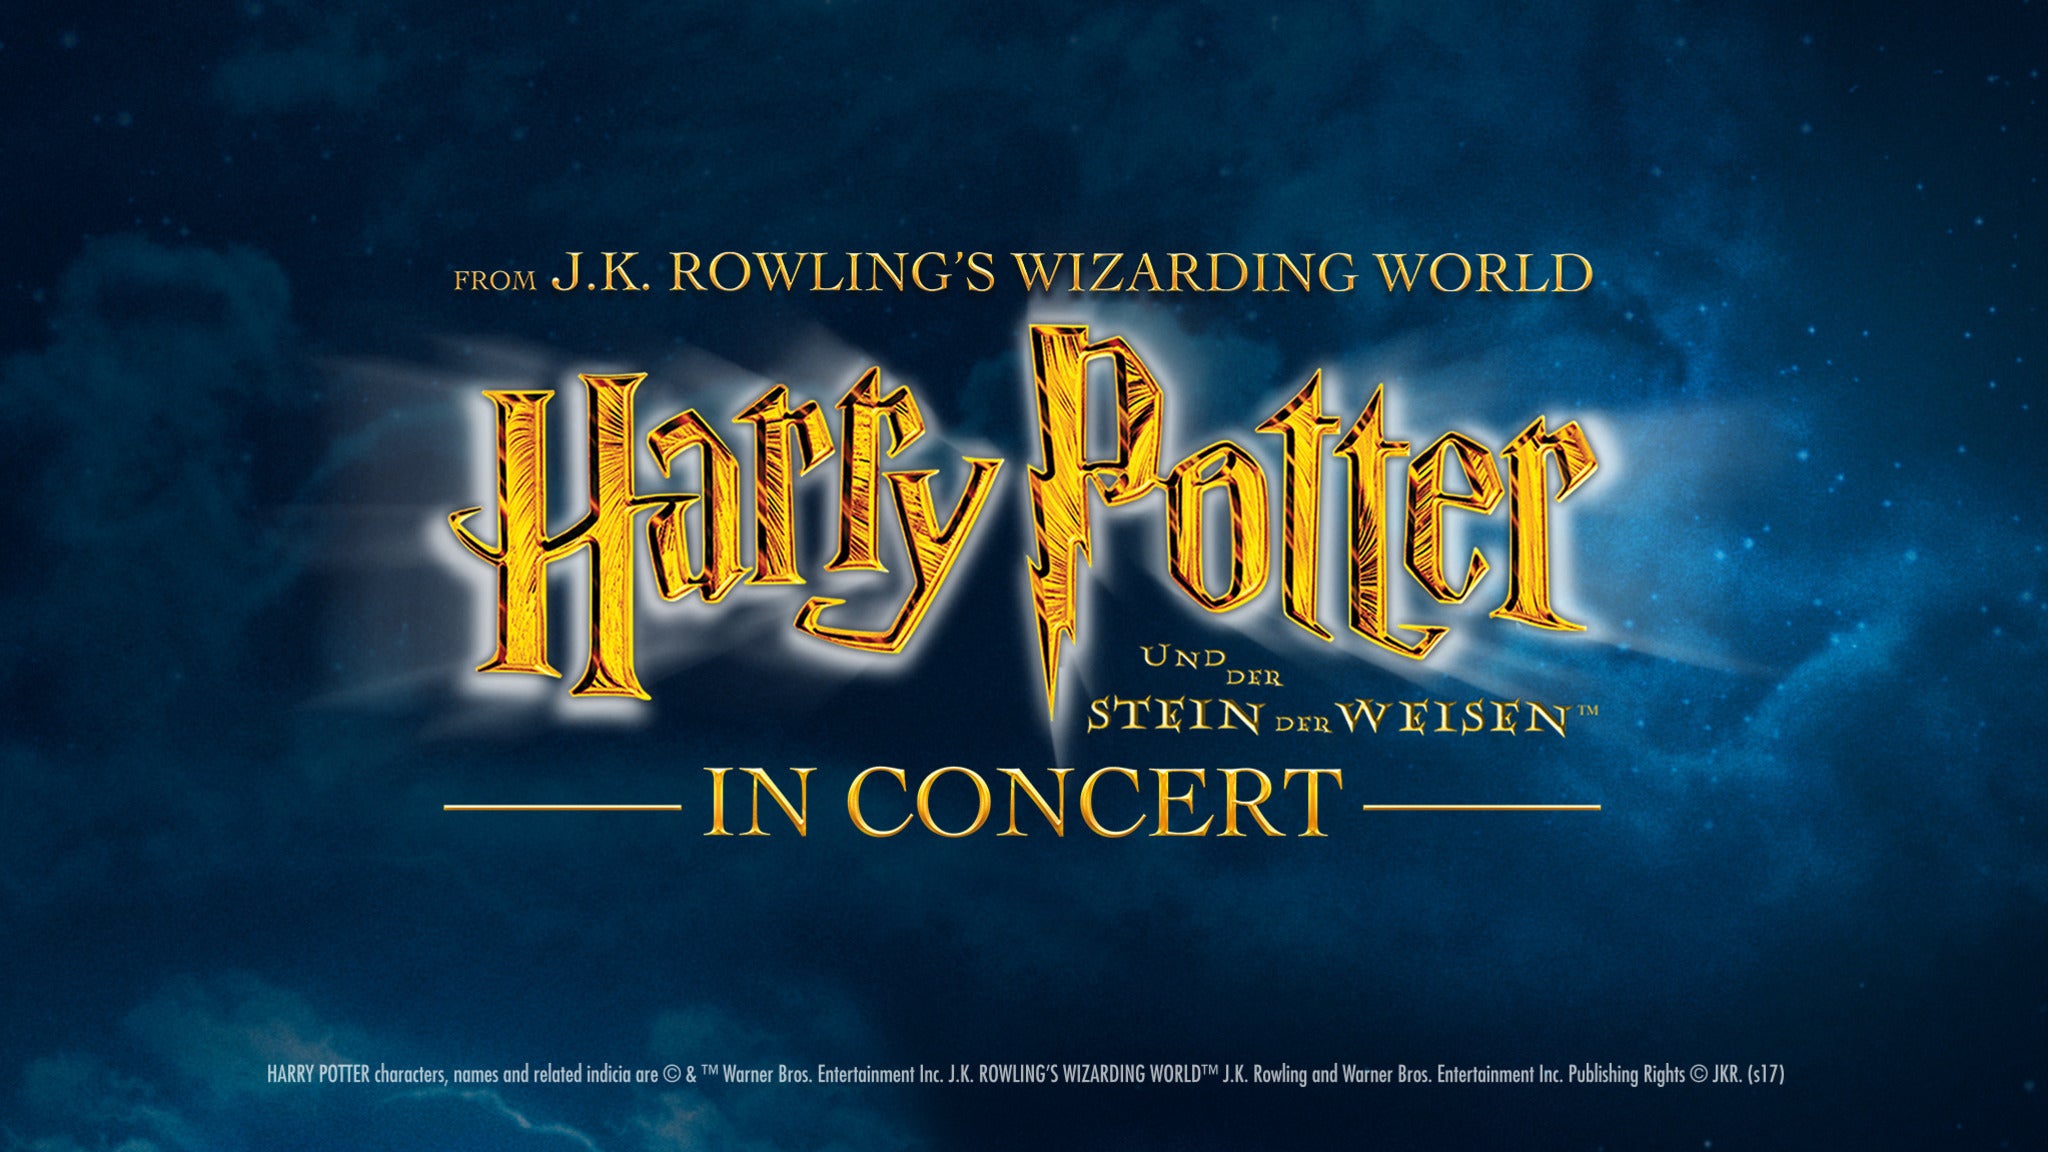 Harry Potter und der Stein der Weisen - In Concert presale information on freepresalepasswords.com